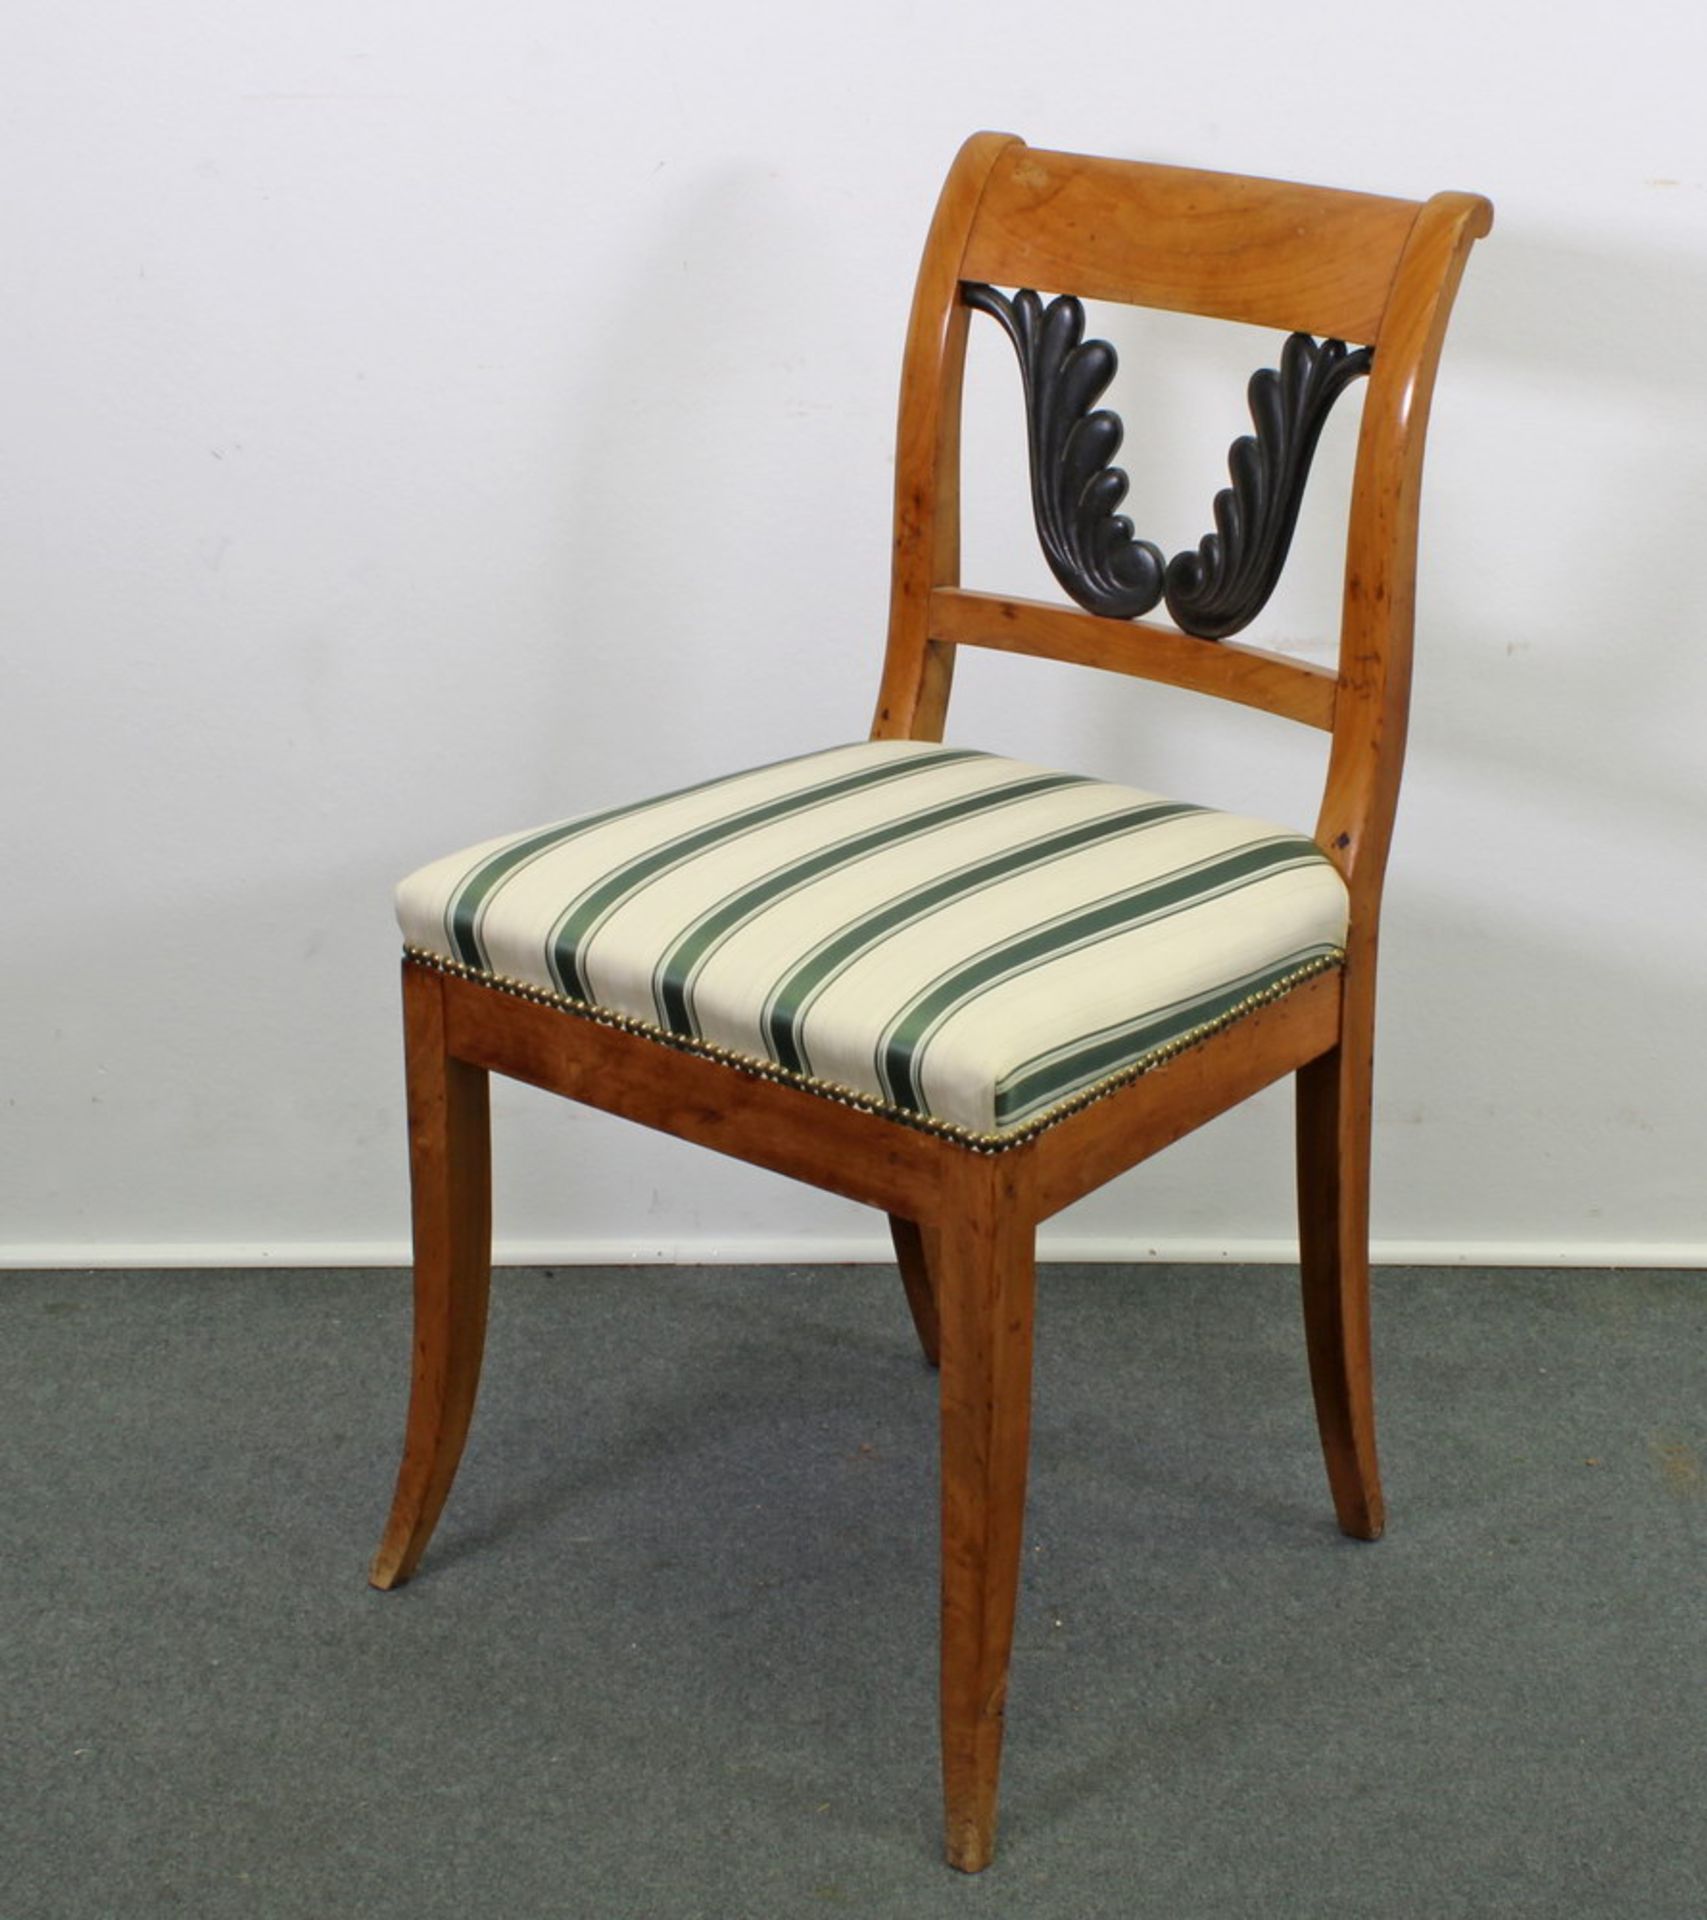 4 Stühle, Biedermeier,um 1825, Kirschbaum, ebonisierte Rückenbretter, erneuerte Sitzpolster, - Bild 2 aus 2